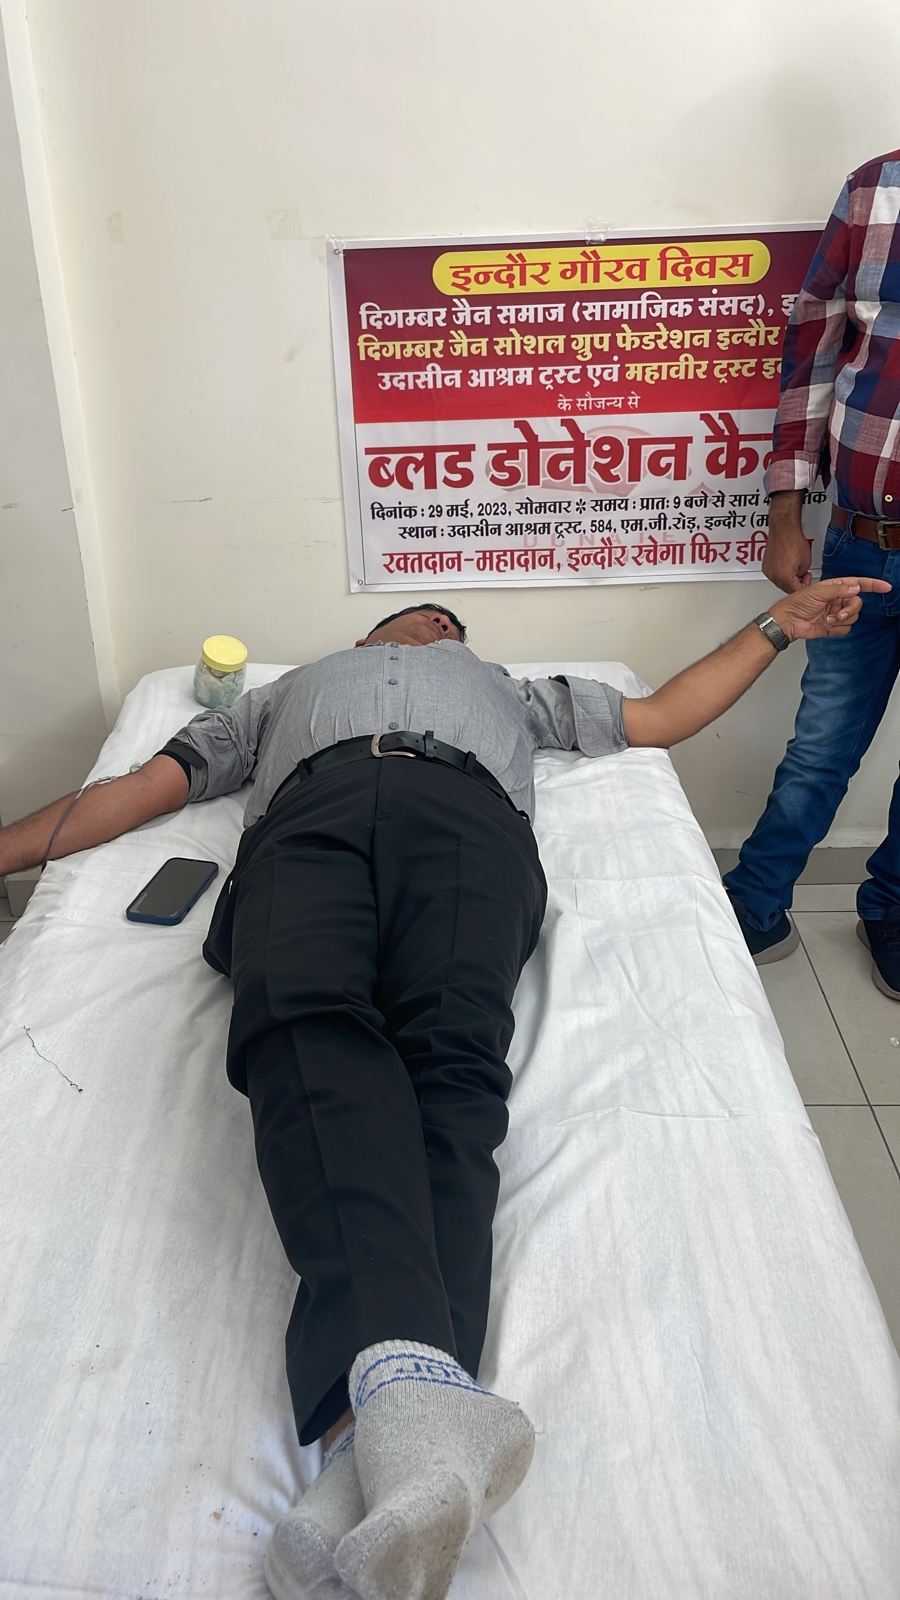 Indore Gaurav Diwas: 30 स्थानों पर शुरू हुआ रक्तदान शिविर, रचा जाएगा नया कीर्तिमान